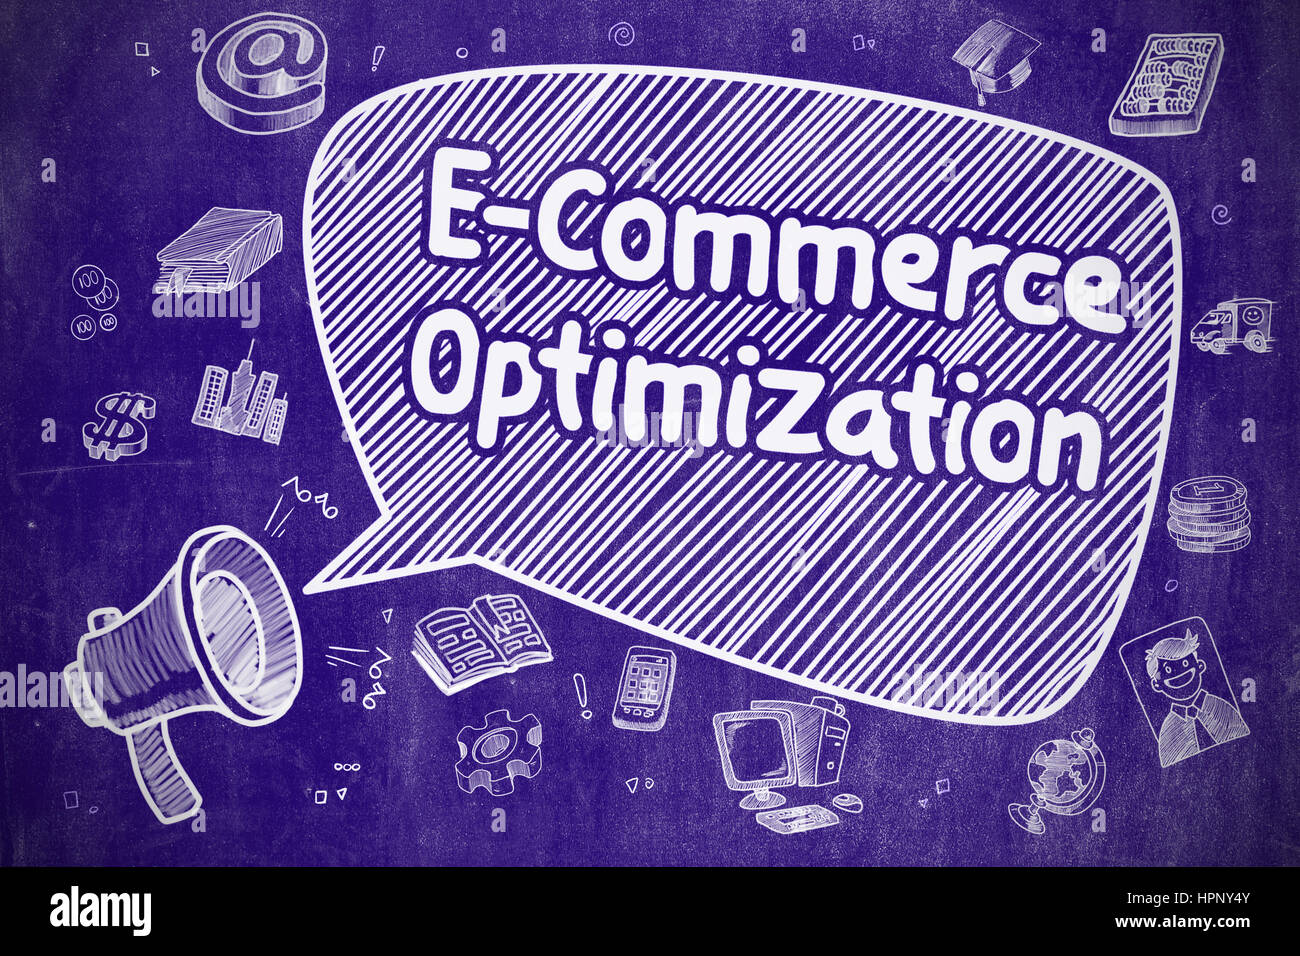 L'E-commerce Optimisation - Concept d'affaires. Banque D'Images